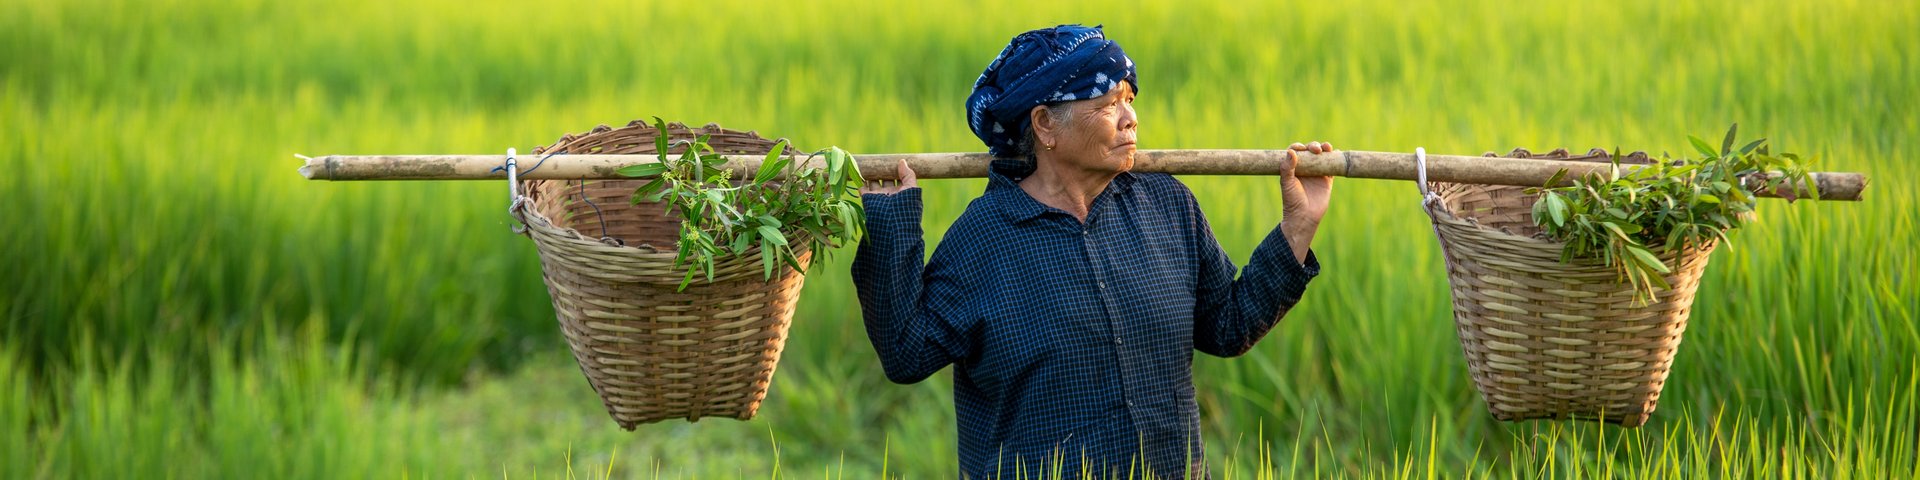 Eine Frau erntet Reis in einem Feld in Thailand